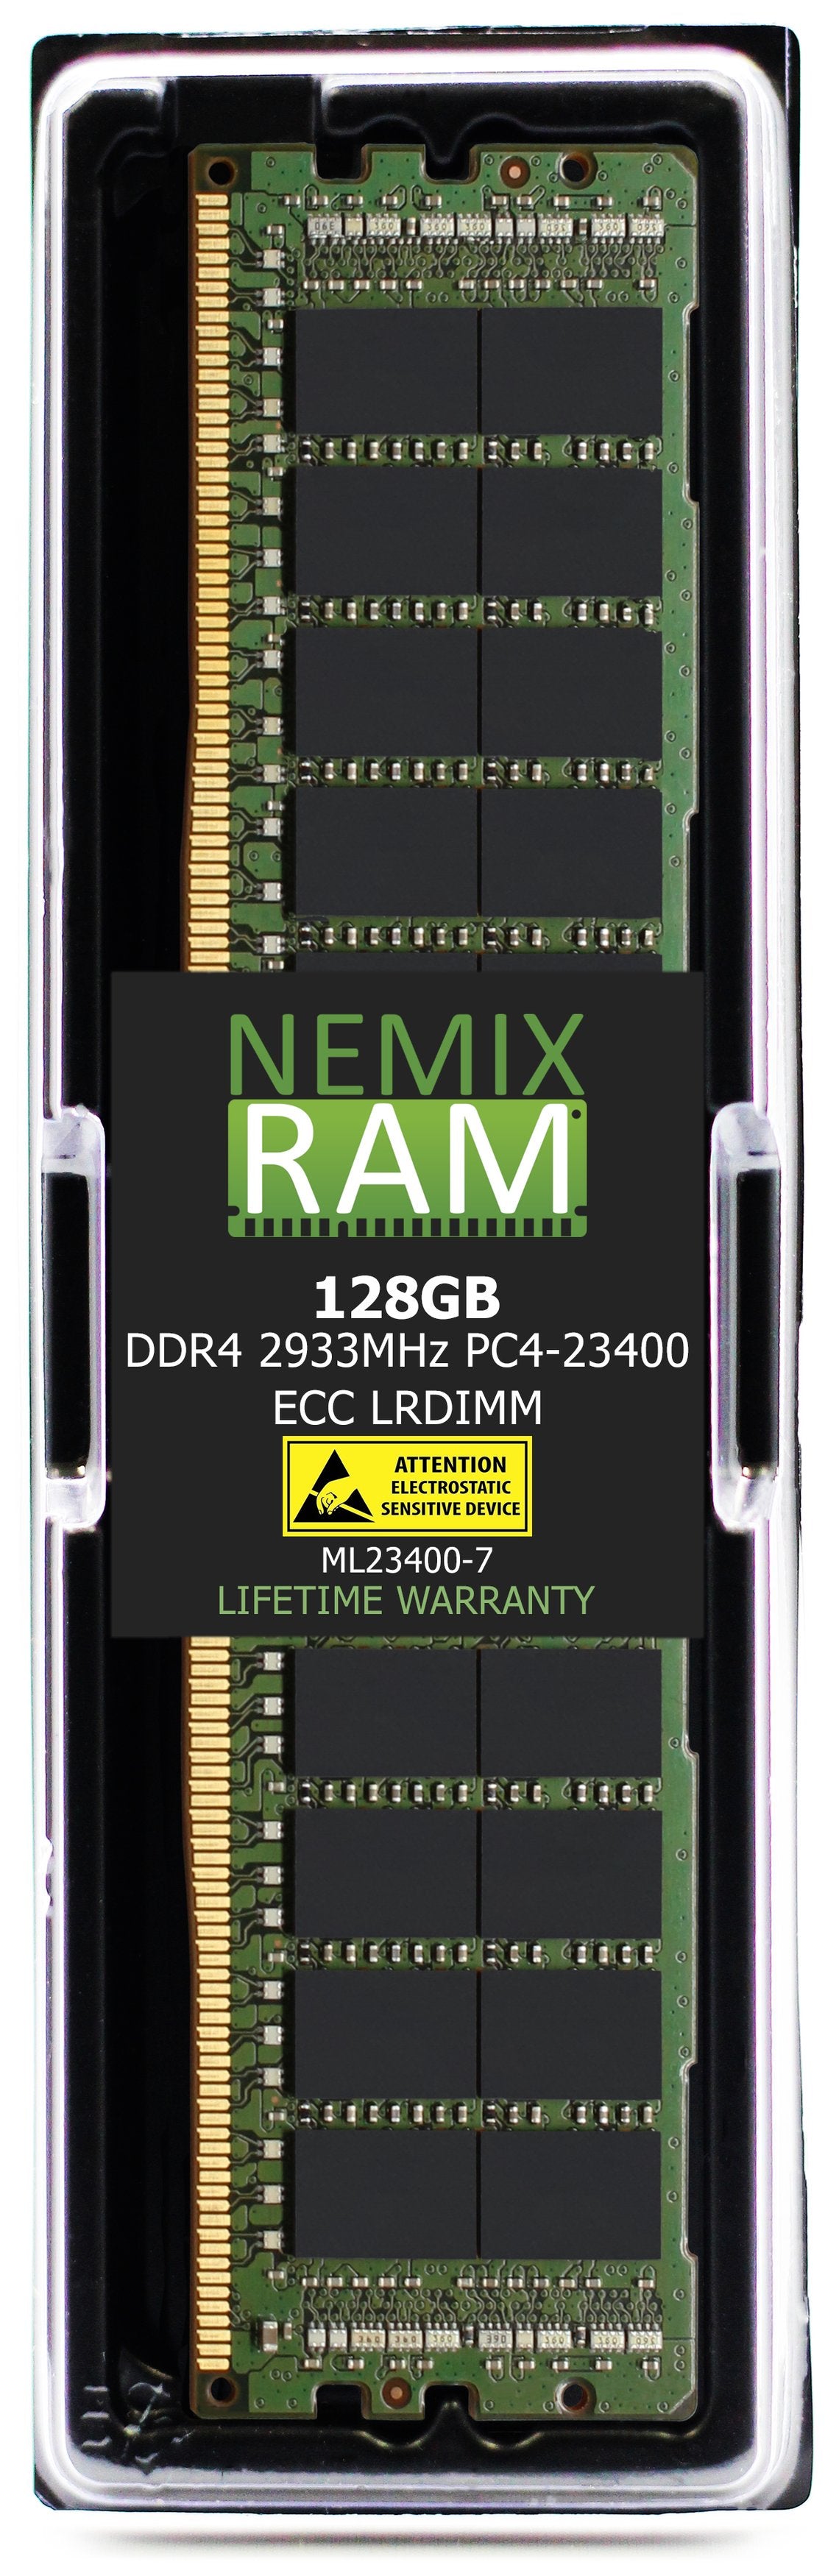 Hynix HMABAGL7MBR4N-WM 128GB DDR4 2933MHZ PC4-23400 LRDIMM Compatible Memory Module